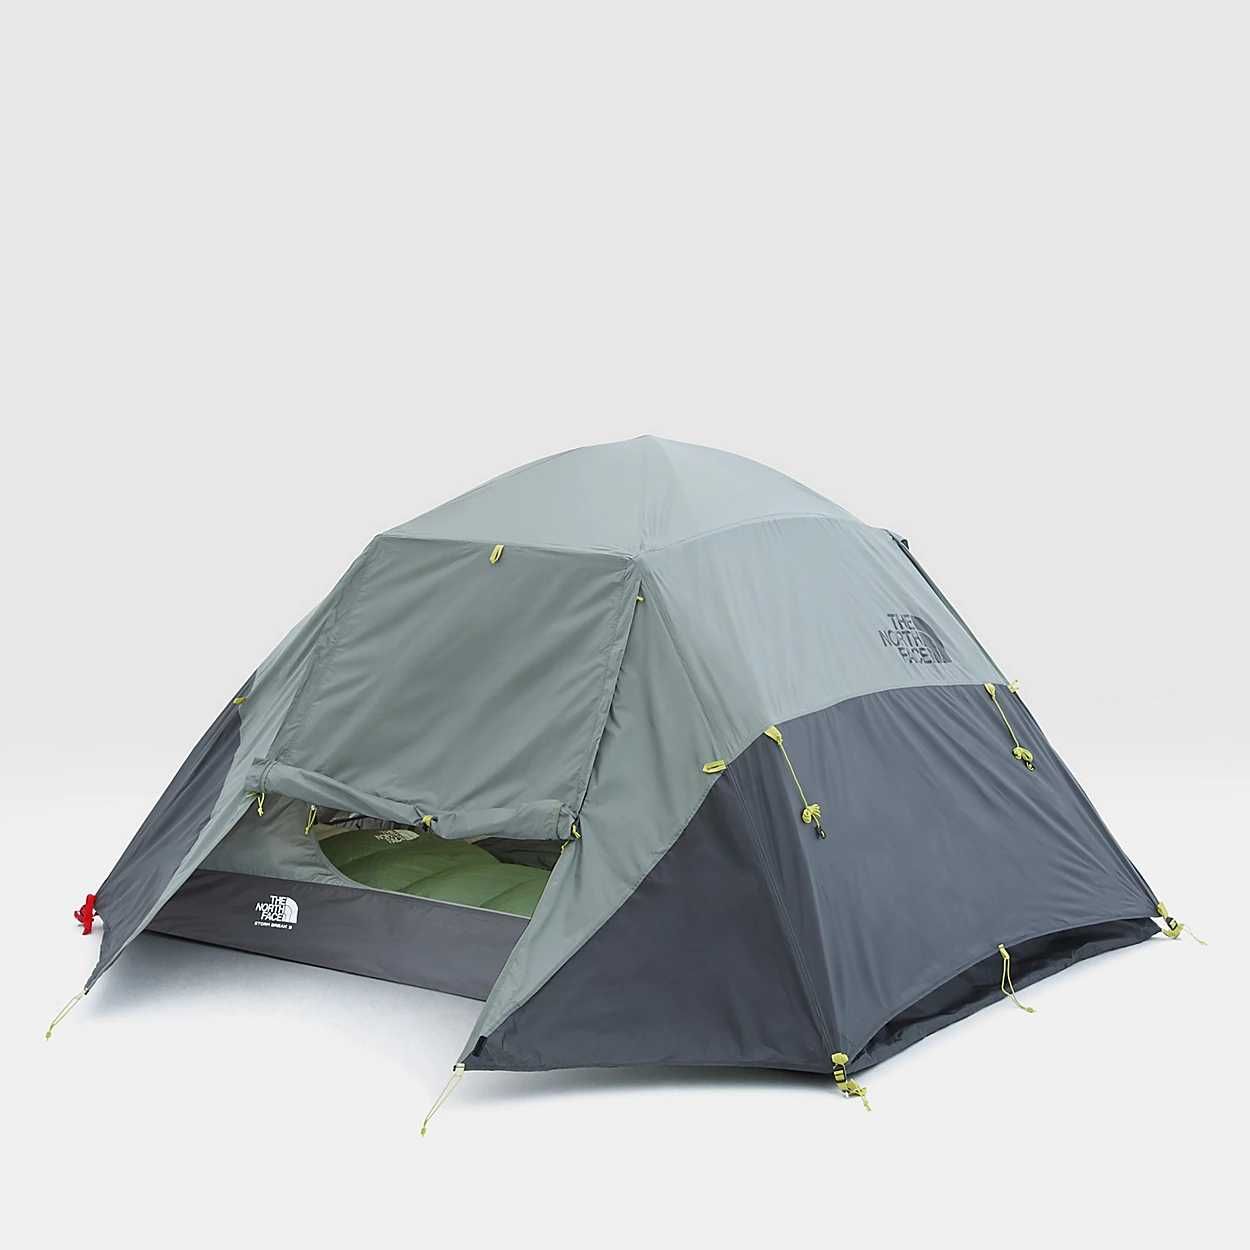 Панорамна палатка від бренду The North Face (3-місна)